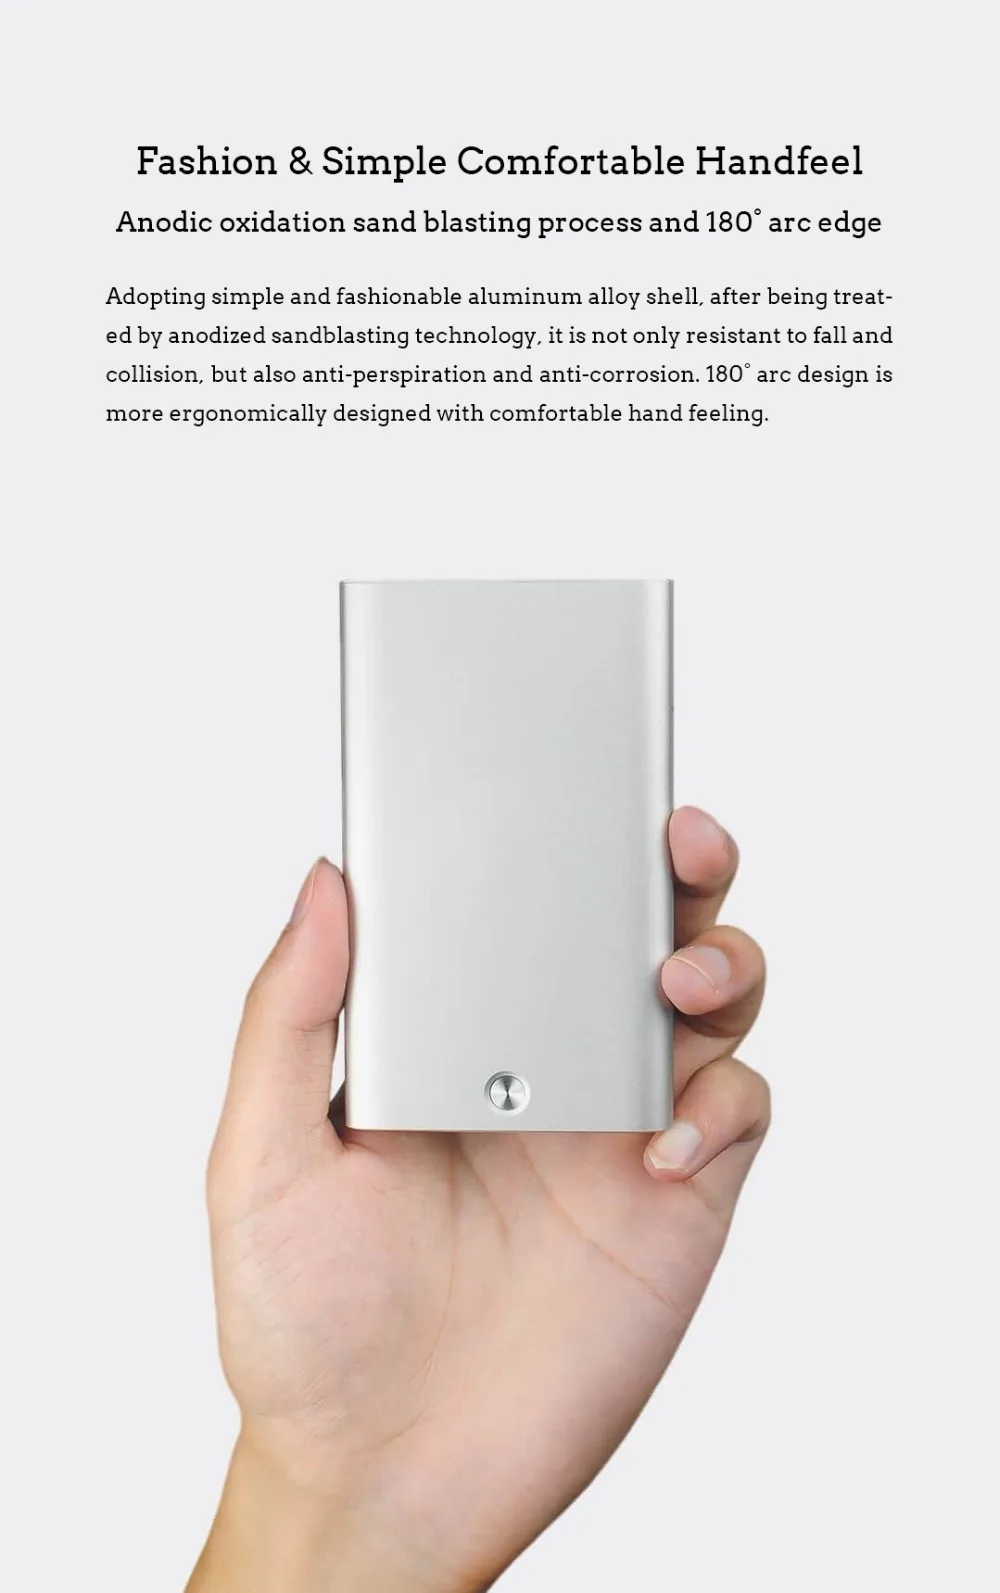 Xiaomi Mijia MIIIW автоматический всплывающий мужской бизнес-держатель для карт тонкий алюминиевый футляр для карт памяти Кредитная карта ID карта хранение Хранитель